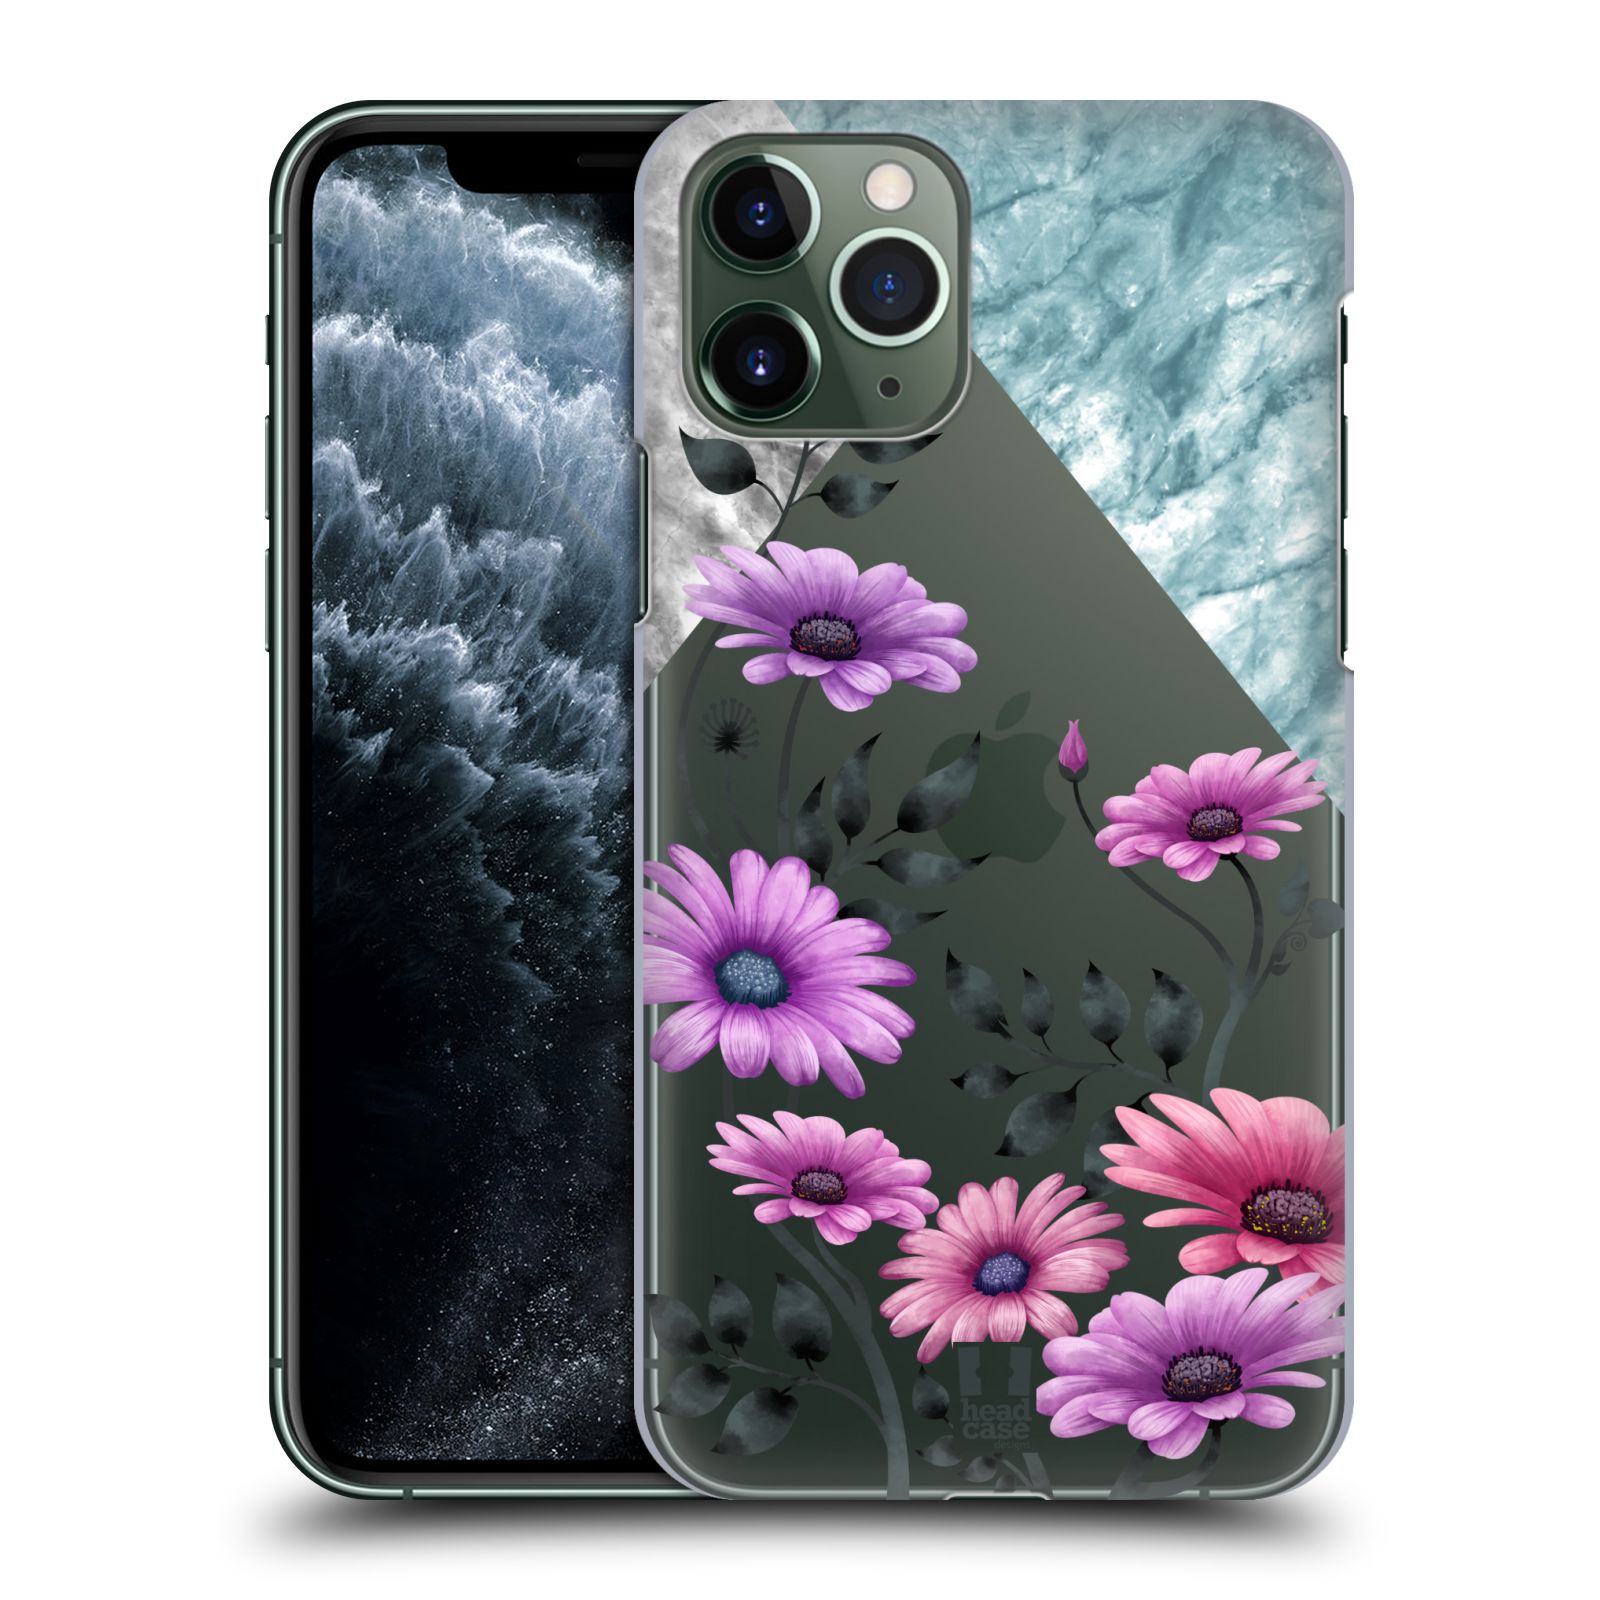 Pouzdro na mobil Apple Iphone 11 PRO - HEAD CASE - květiny hvězdnice, Aster fialová a modrá